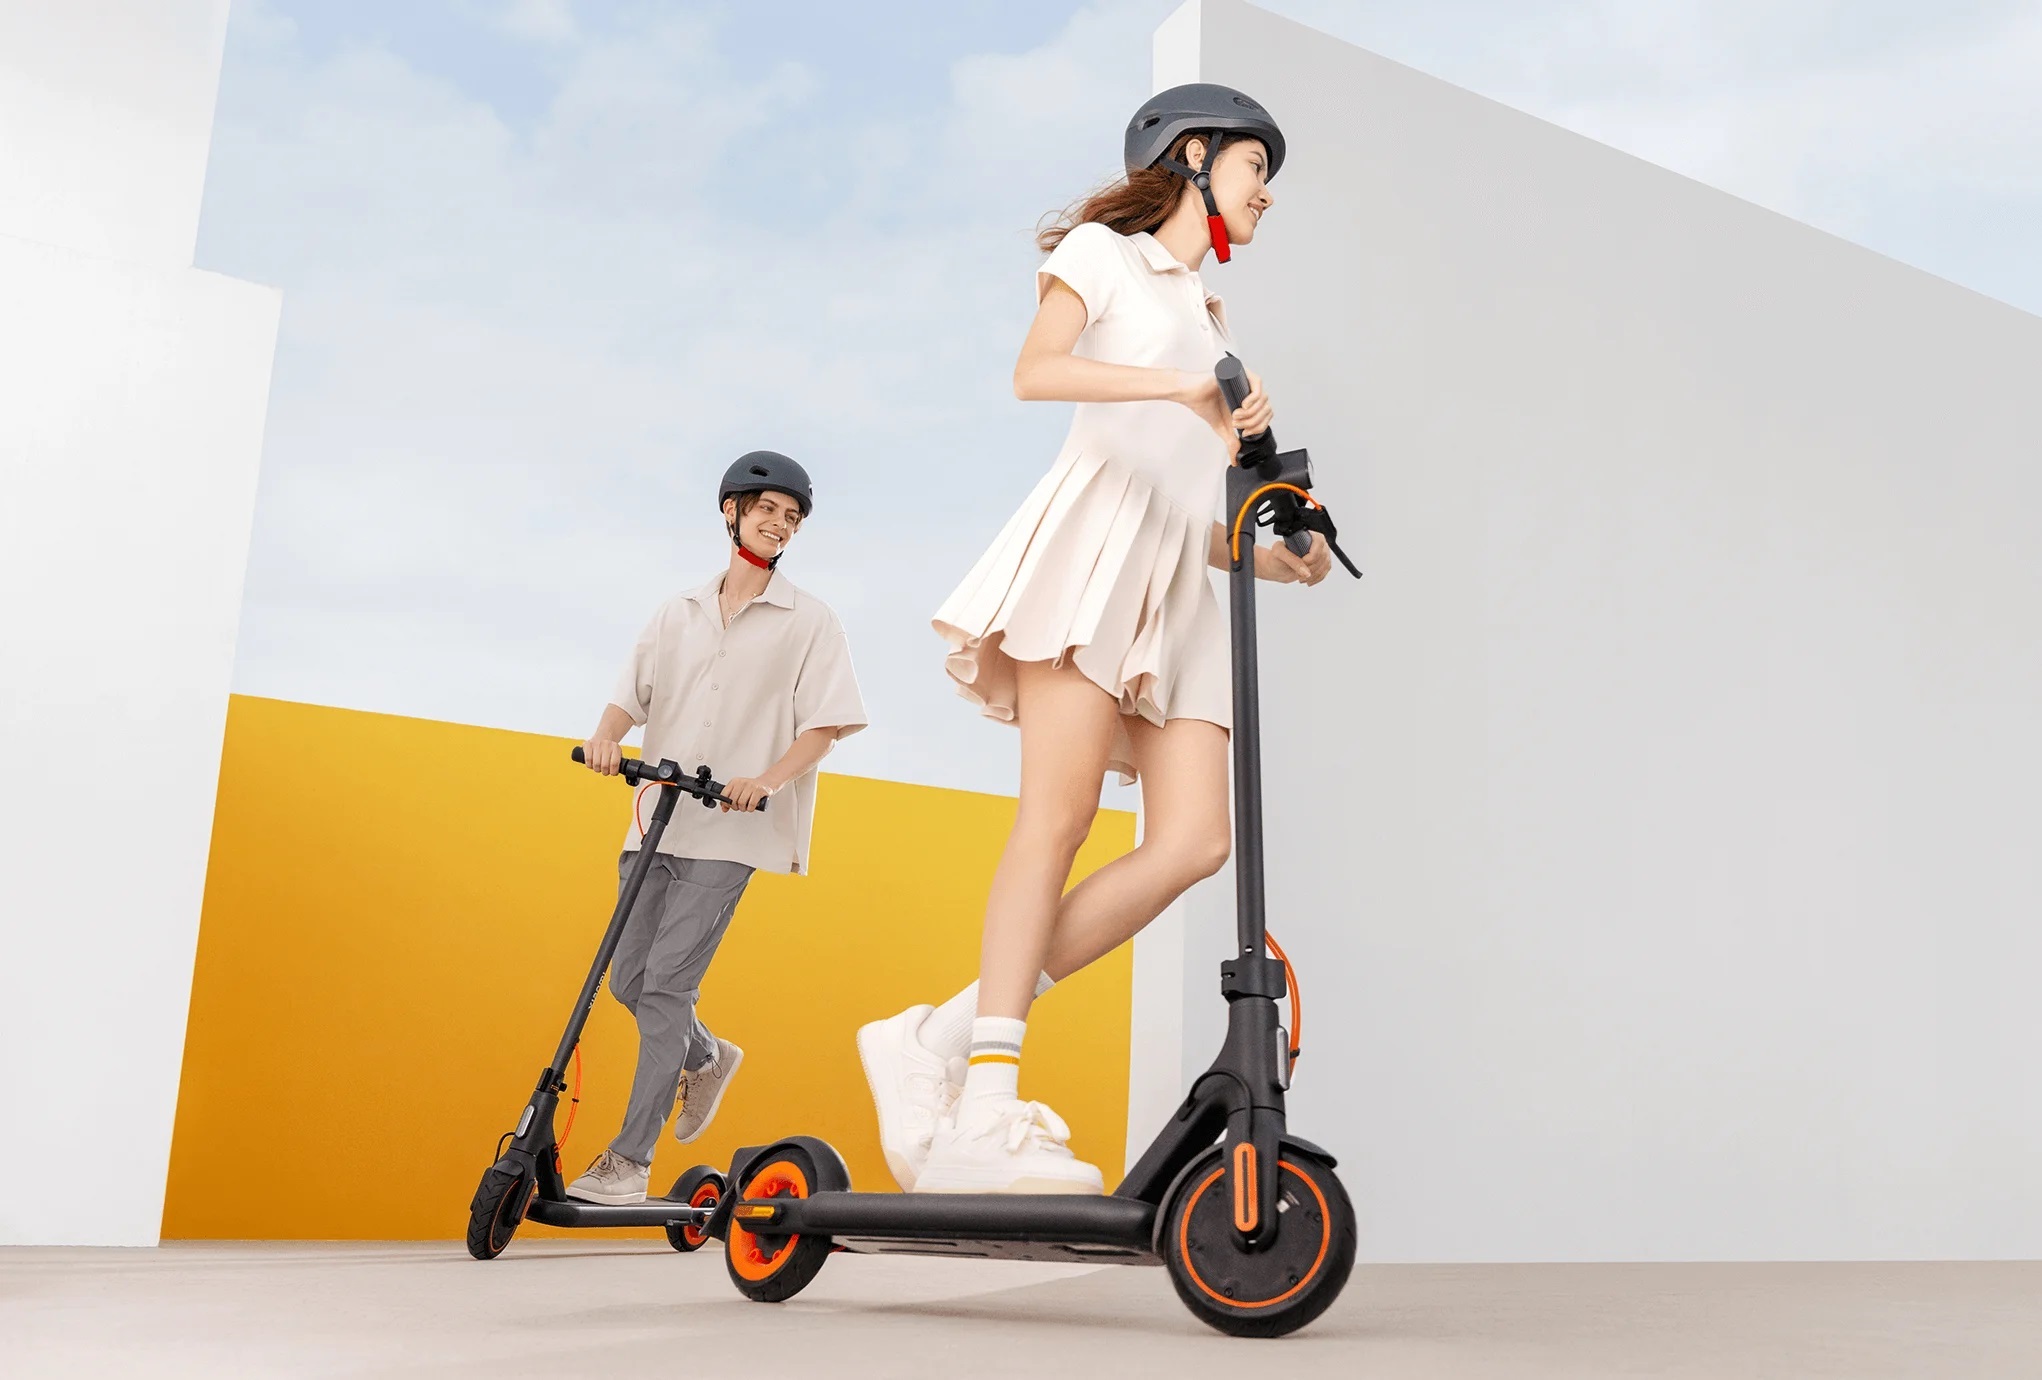 Xiaomi Electric Scooter 4 Go: en budgetelektrisk skoter med en 450 W-motor och en räckvidd på 18 km